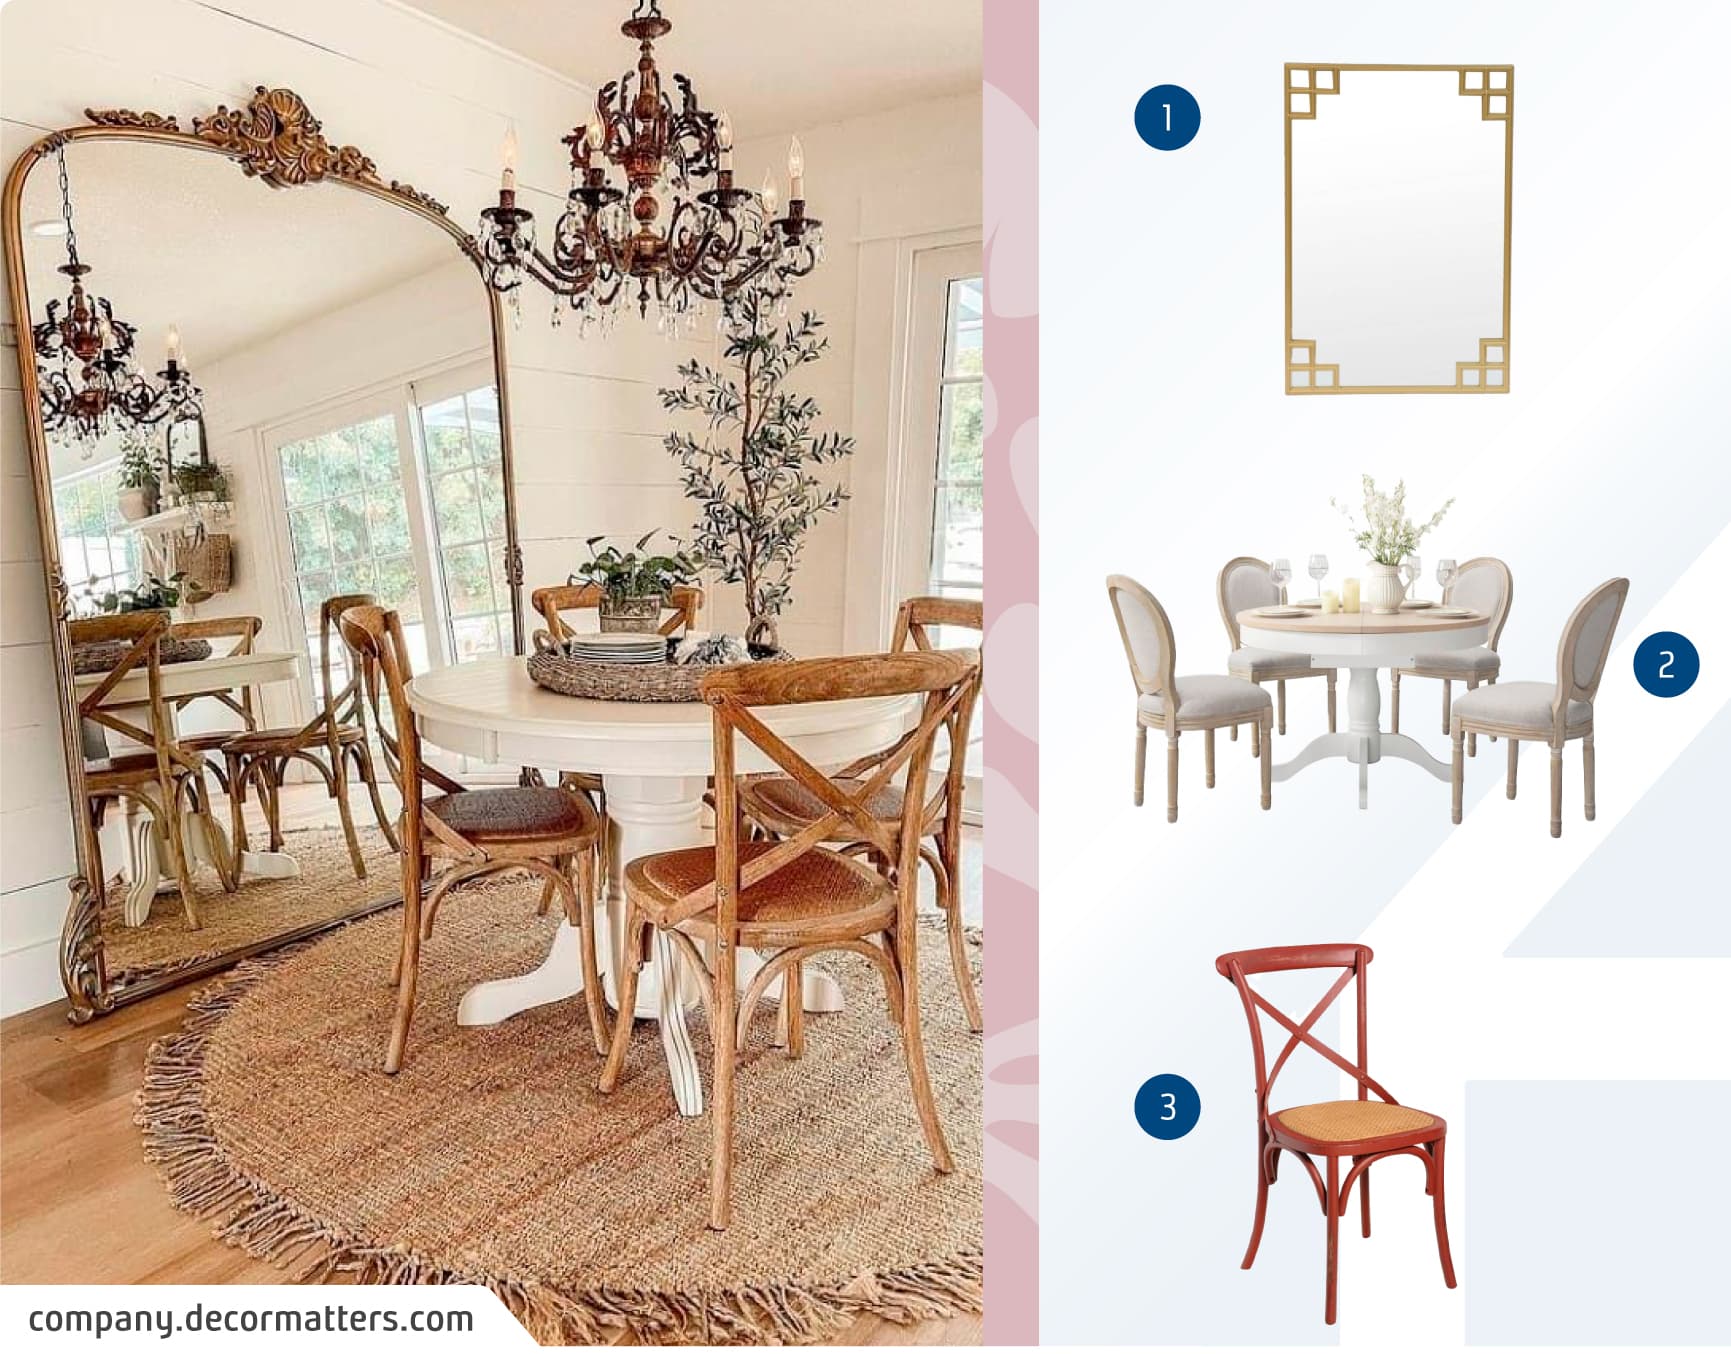 Comedor estilo clásico con una mesa redonda blanca rodeada por cuatro sillas de madera. Al lado del comedor hay un gran espejo con marco dorado y ornamentado.